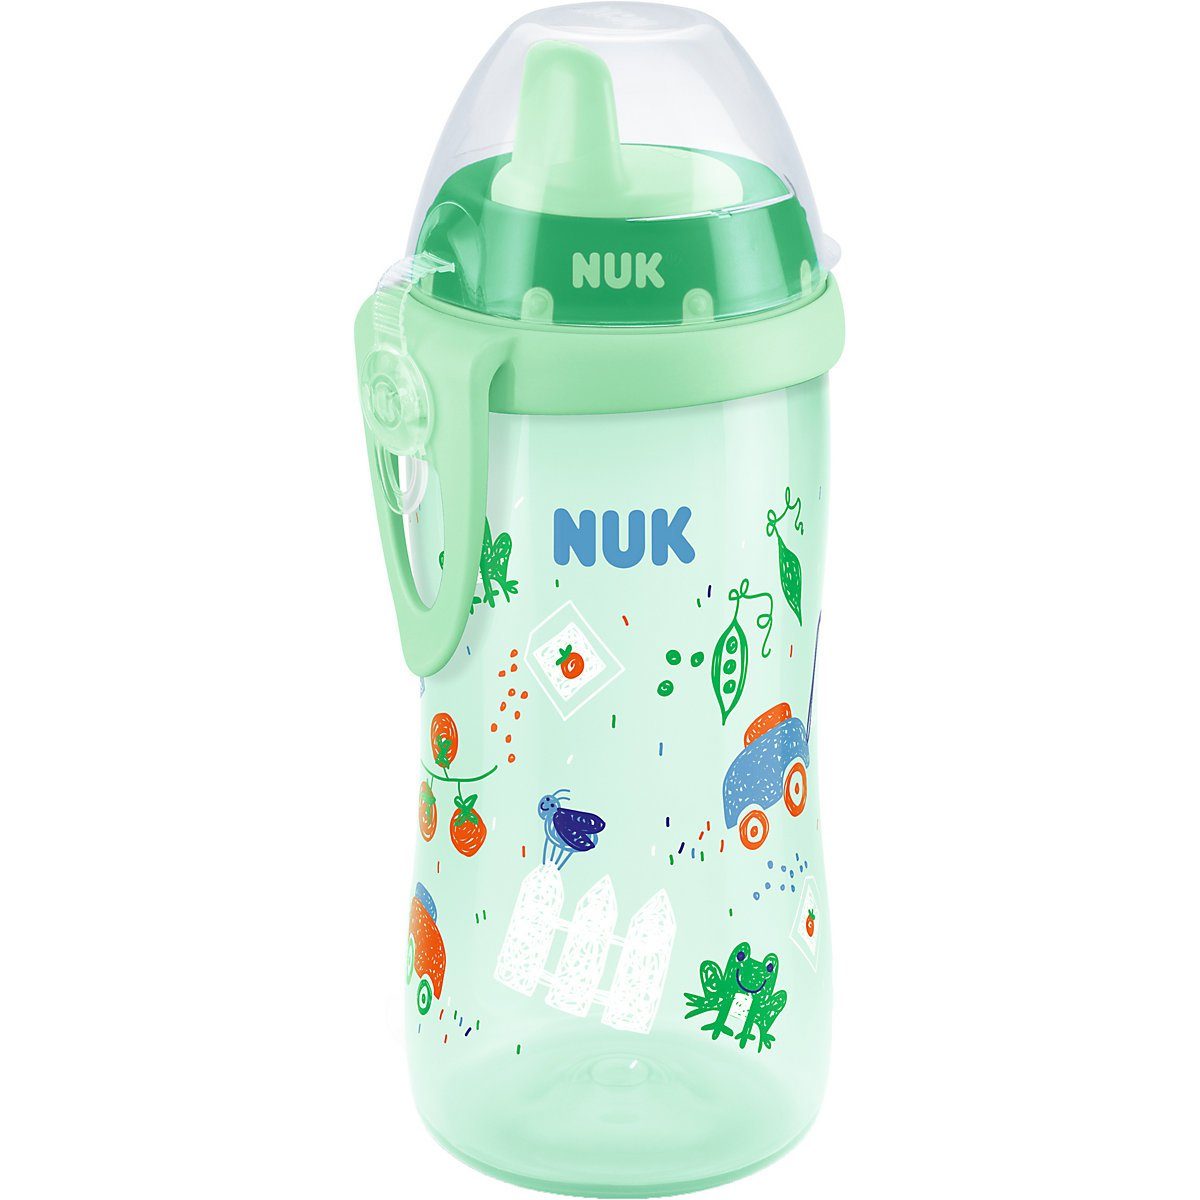 NUK NUK First Choice Kiddy Cup Trinklernbecher Trinkflasche auslaufsicher 1x 300 ml 